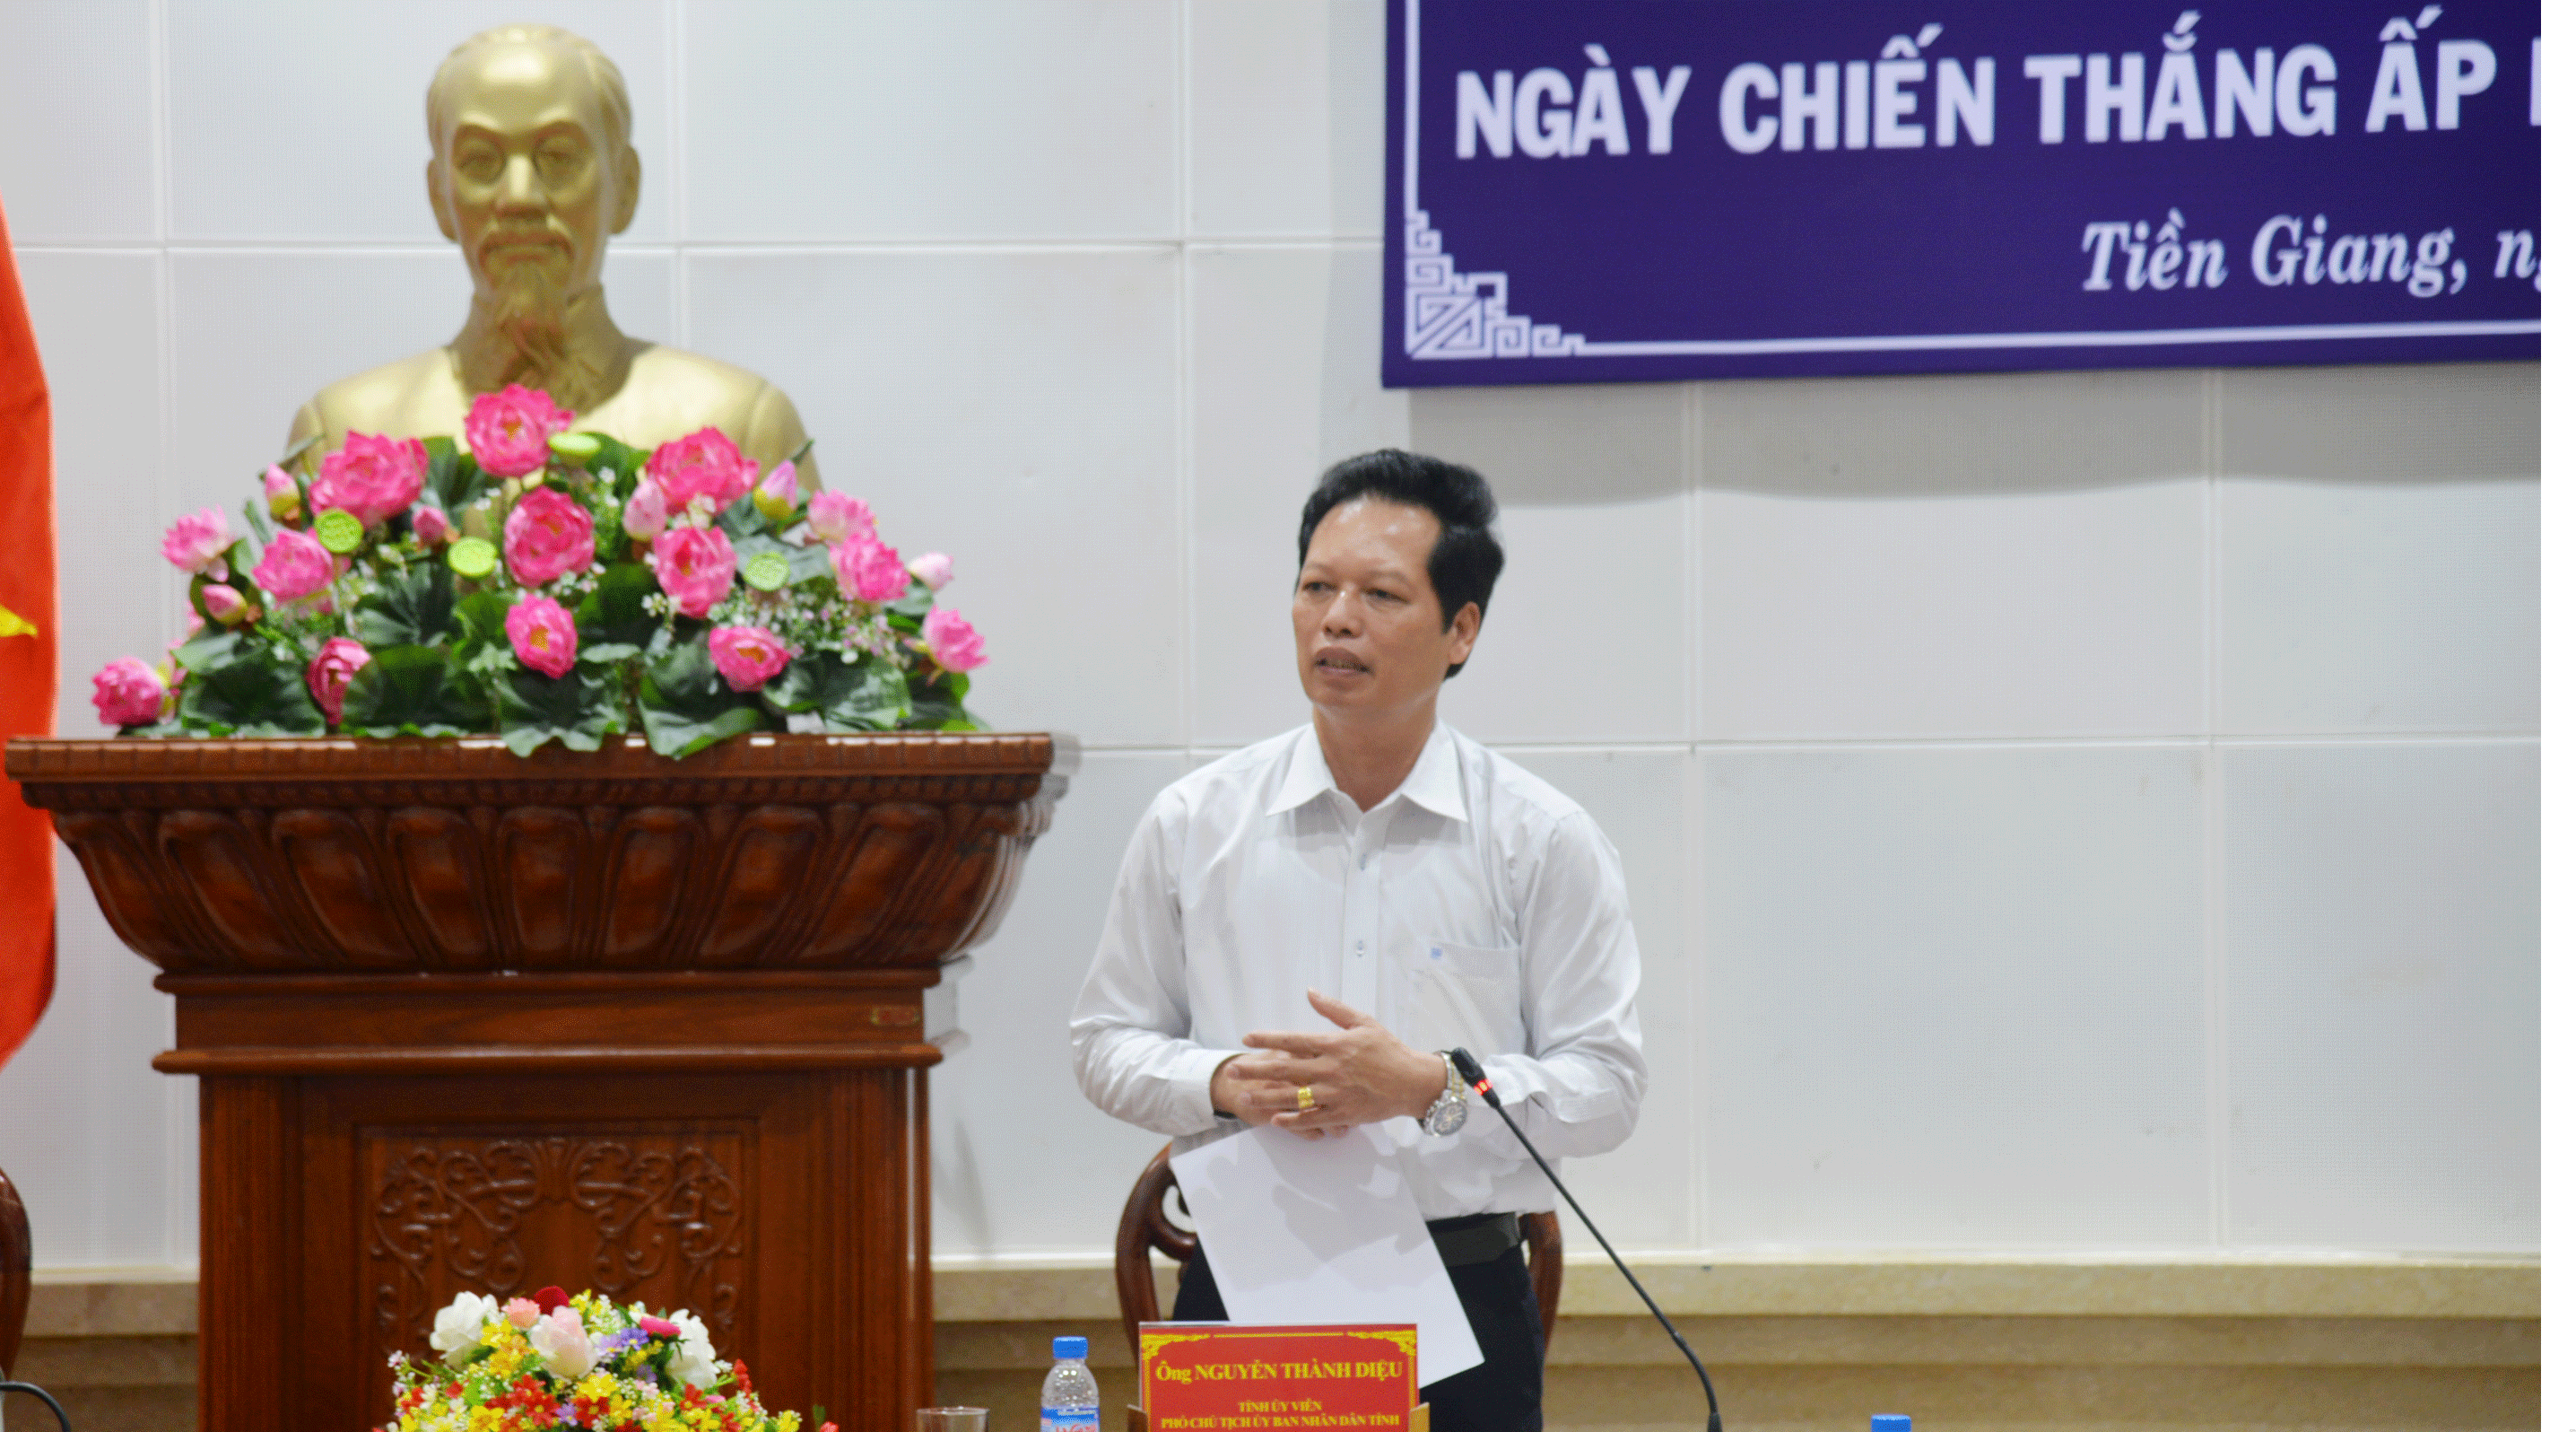  Đồng chí Nguyễn Thành Diệu, Tỉnh ủy viên, Phó chủ tịch UBND tỉnh thông tin đến phóng viên báo chí về sự kiện Kỷ niệm 60 năm Ngày Chiến thắng Ấp Bắc sắp diễn ra